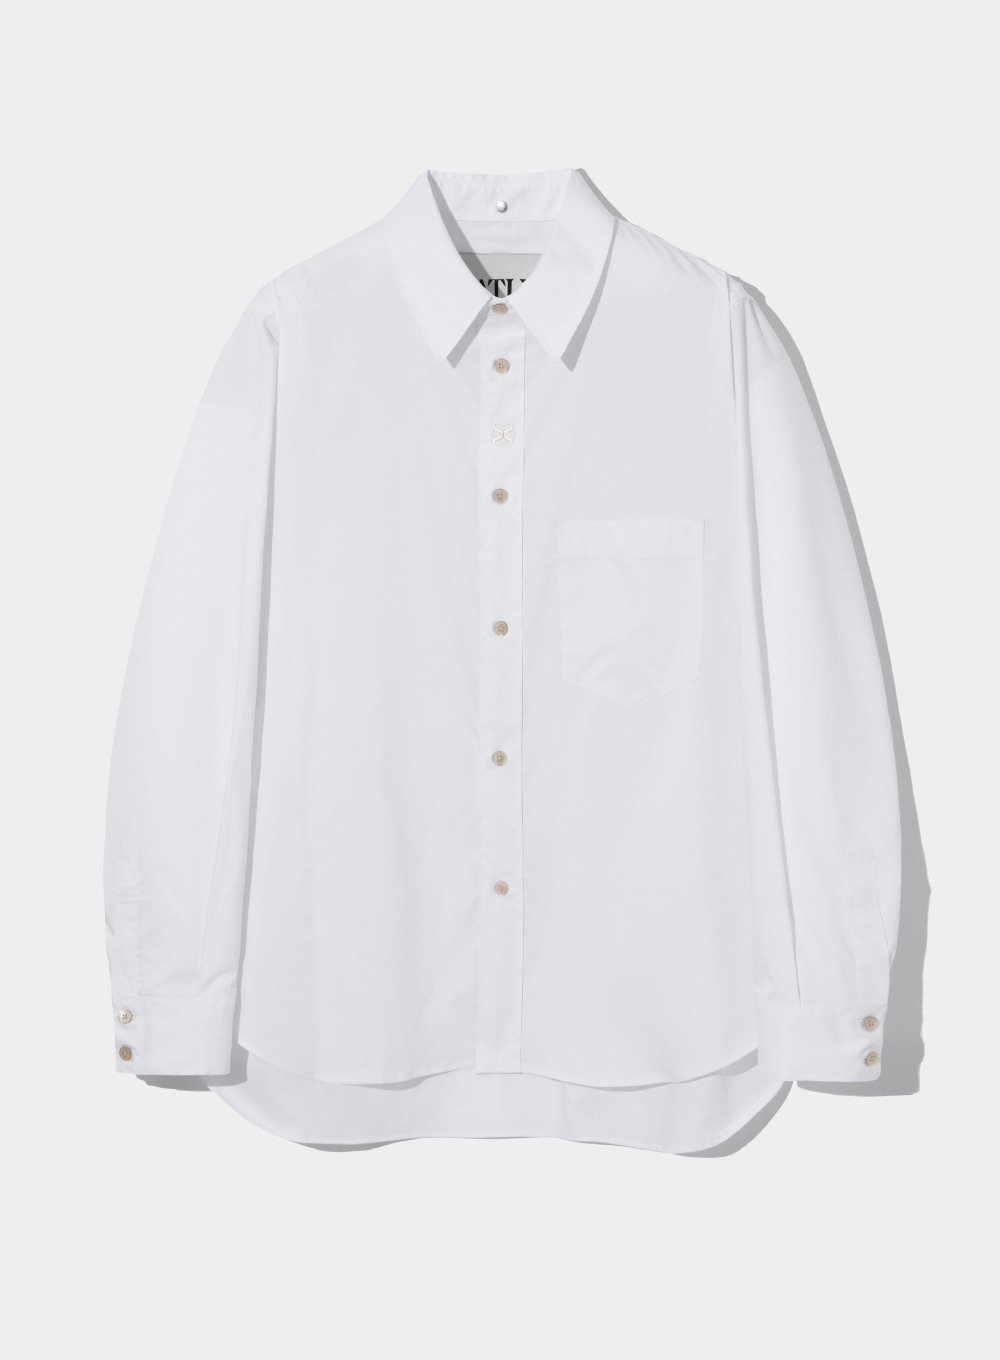 [4월 13일 예약배송]Satur All Day Logo Basic Shirts - Classic White